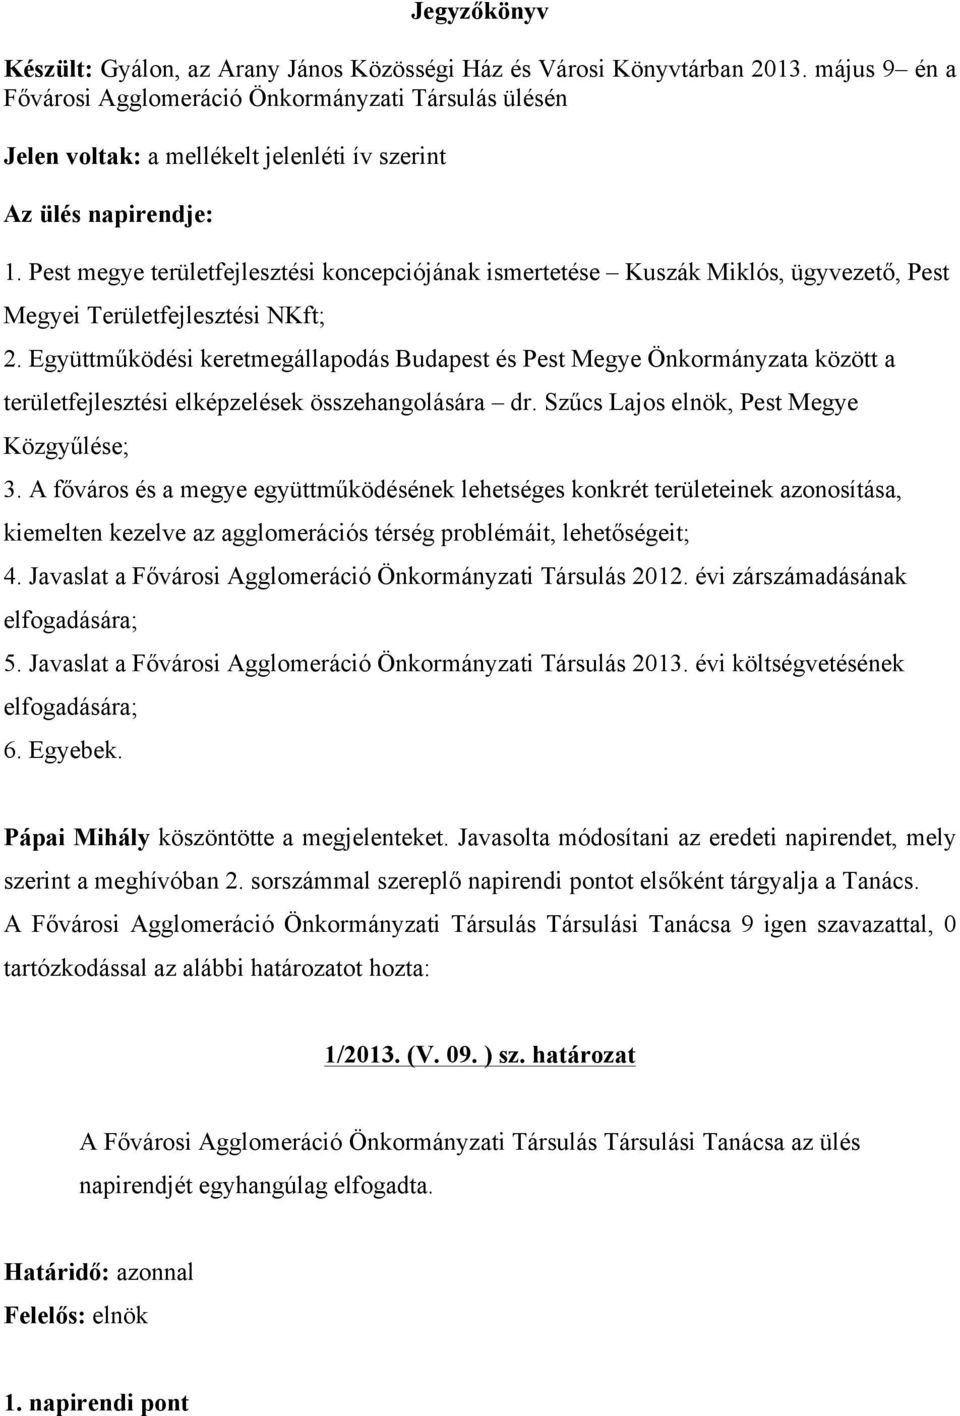 Pest megye területfejlesztési koncepciójának ismertetése Kuszák Miklós, ügyvezető, Pest Megyei Területfejlesztési NKft; 2.